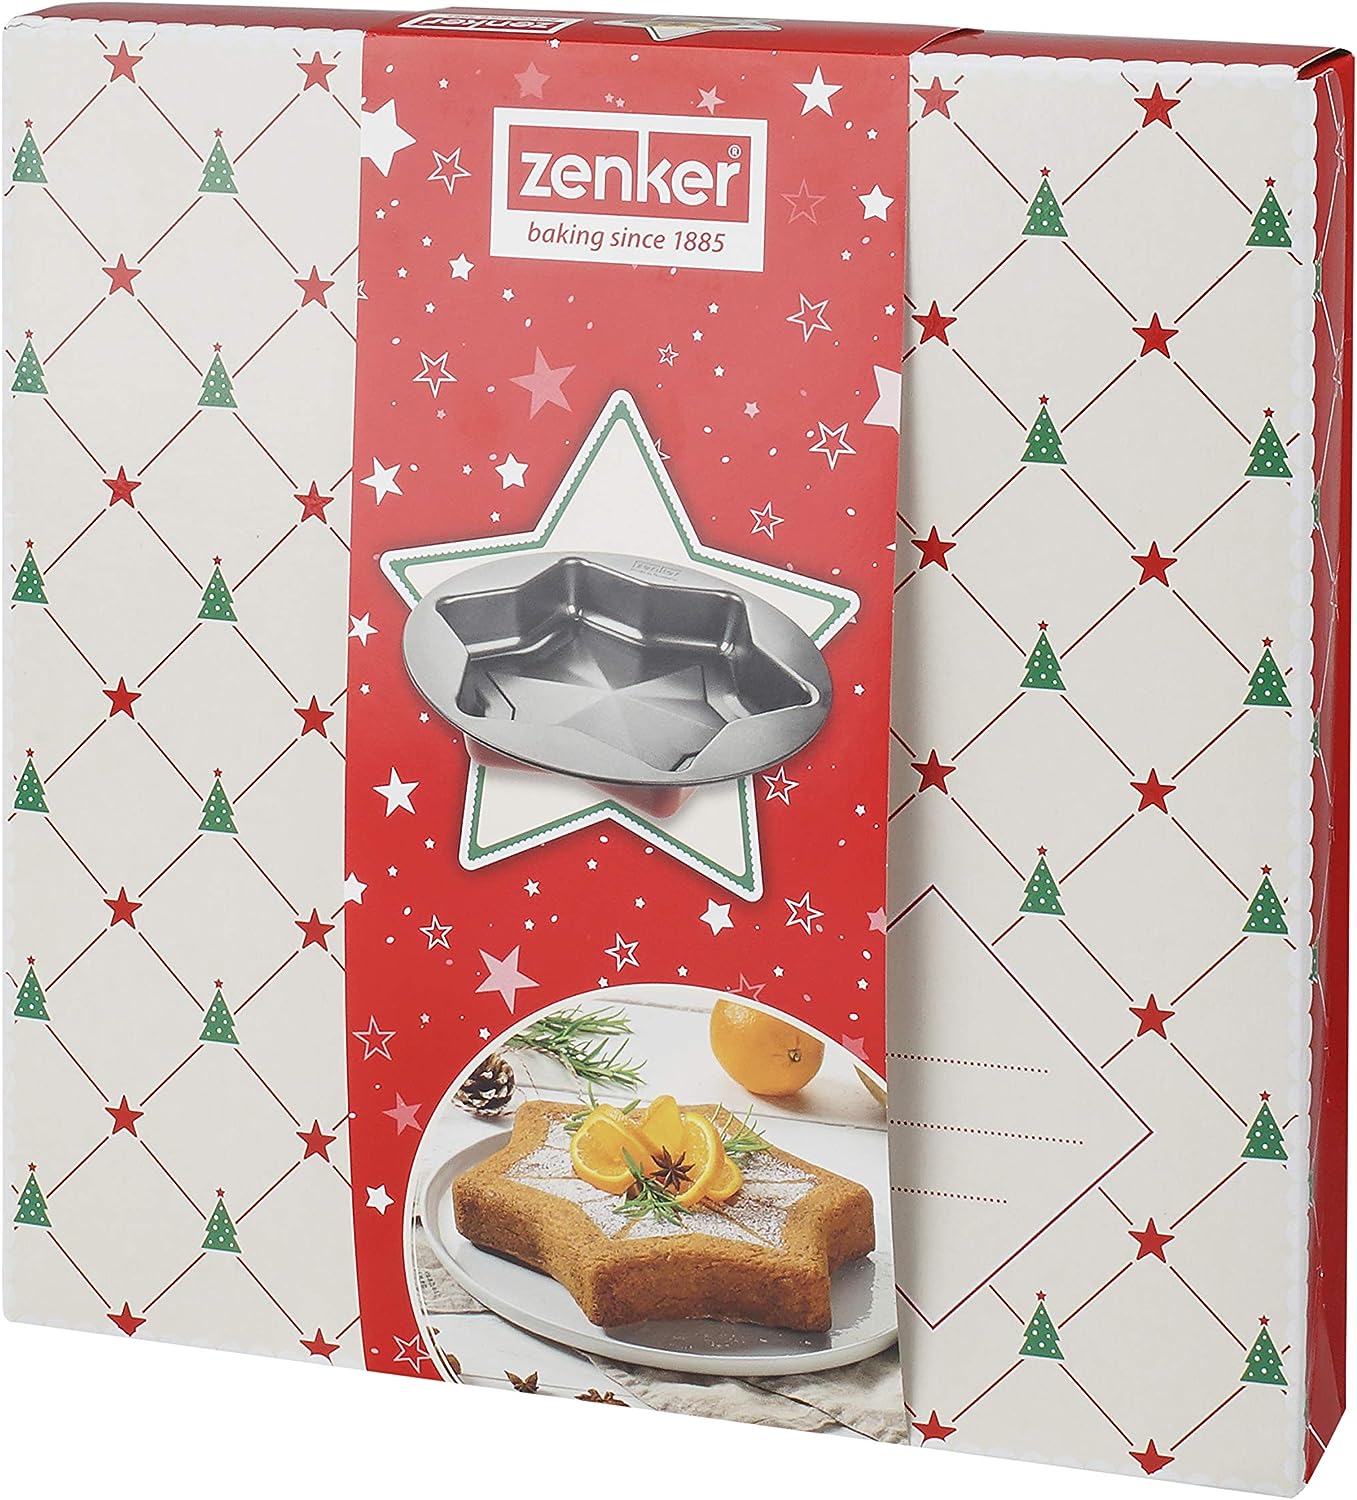 Zenker "Sparkling Christmas" Star Baking Mould, Red/Black